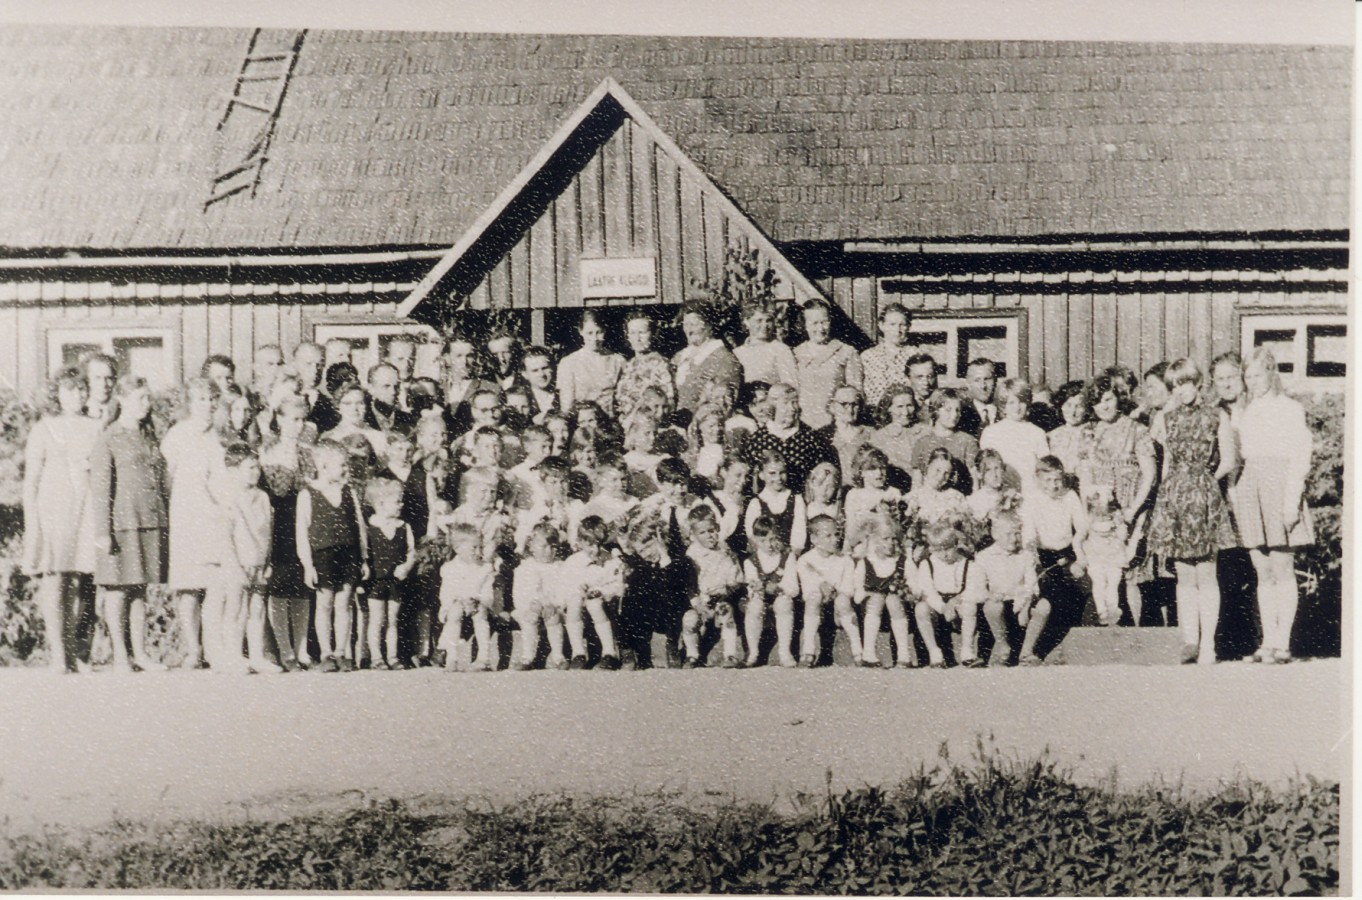 Laatre kooli pere oma vana koolimaja esisel